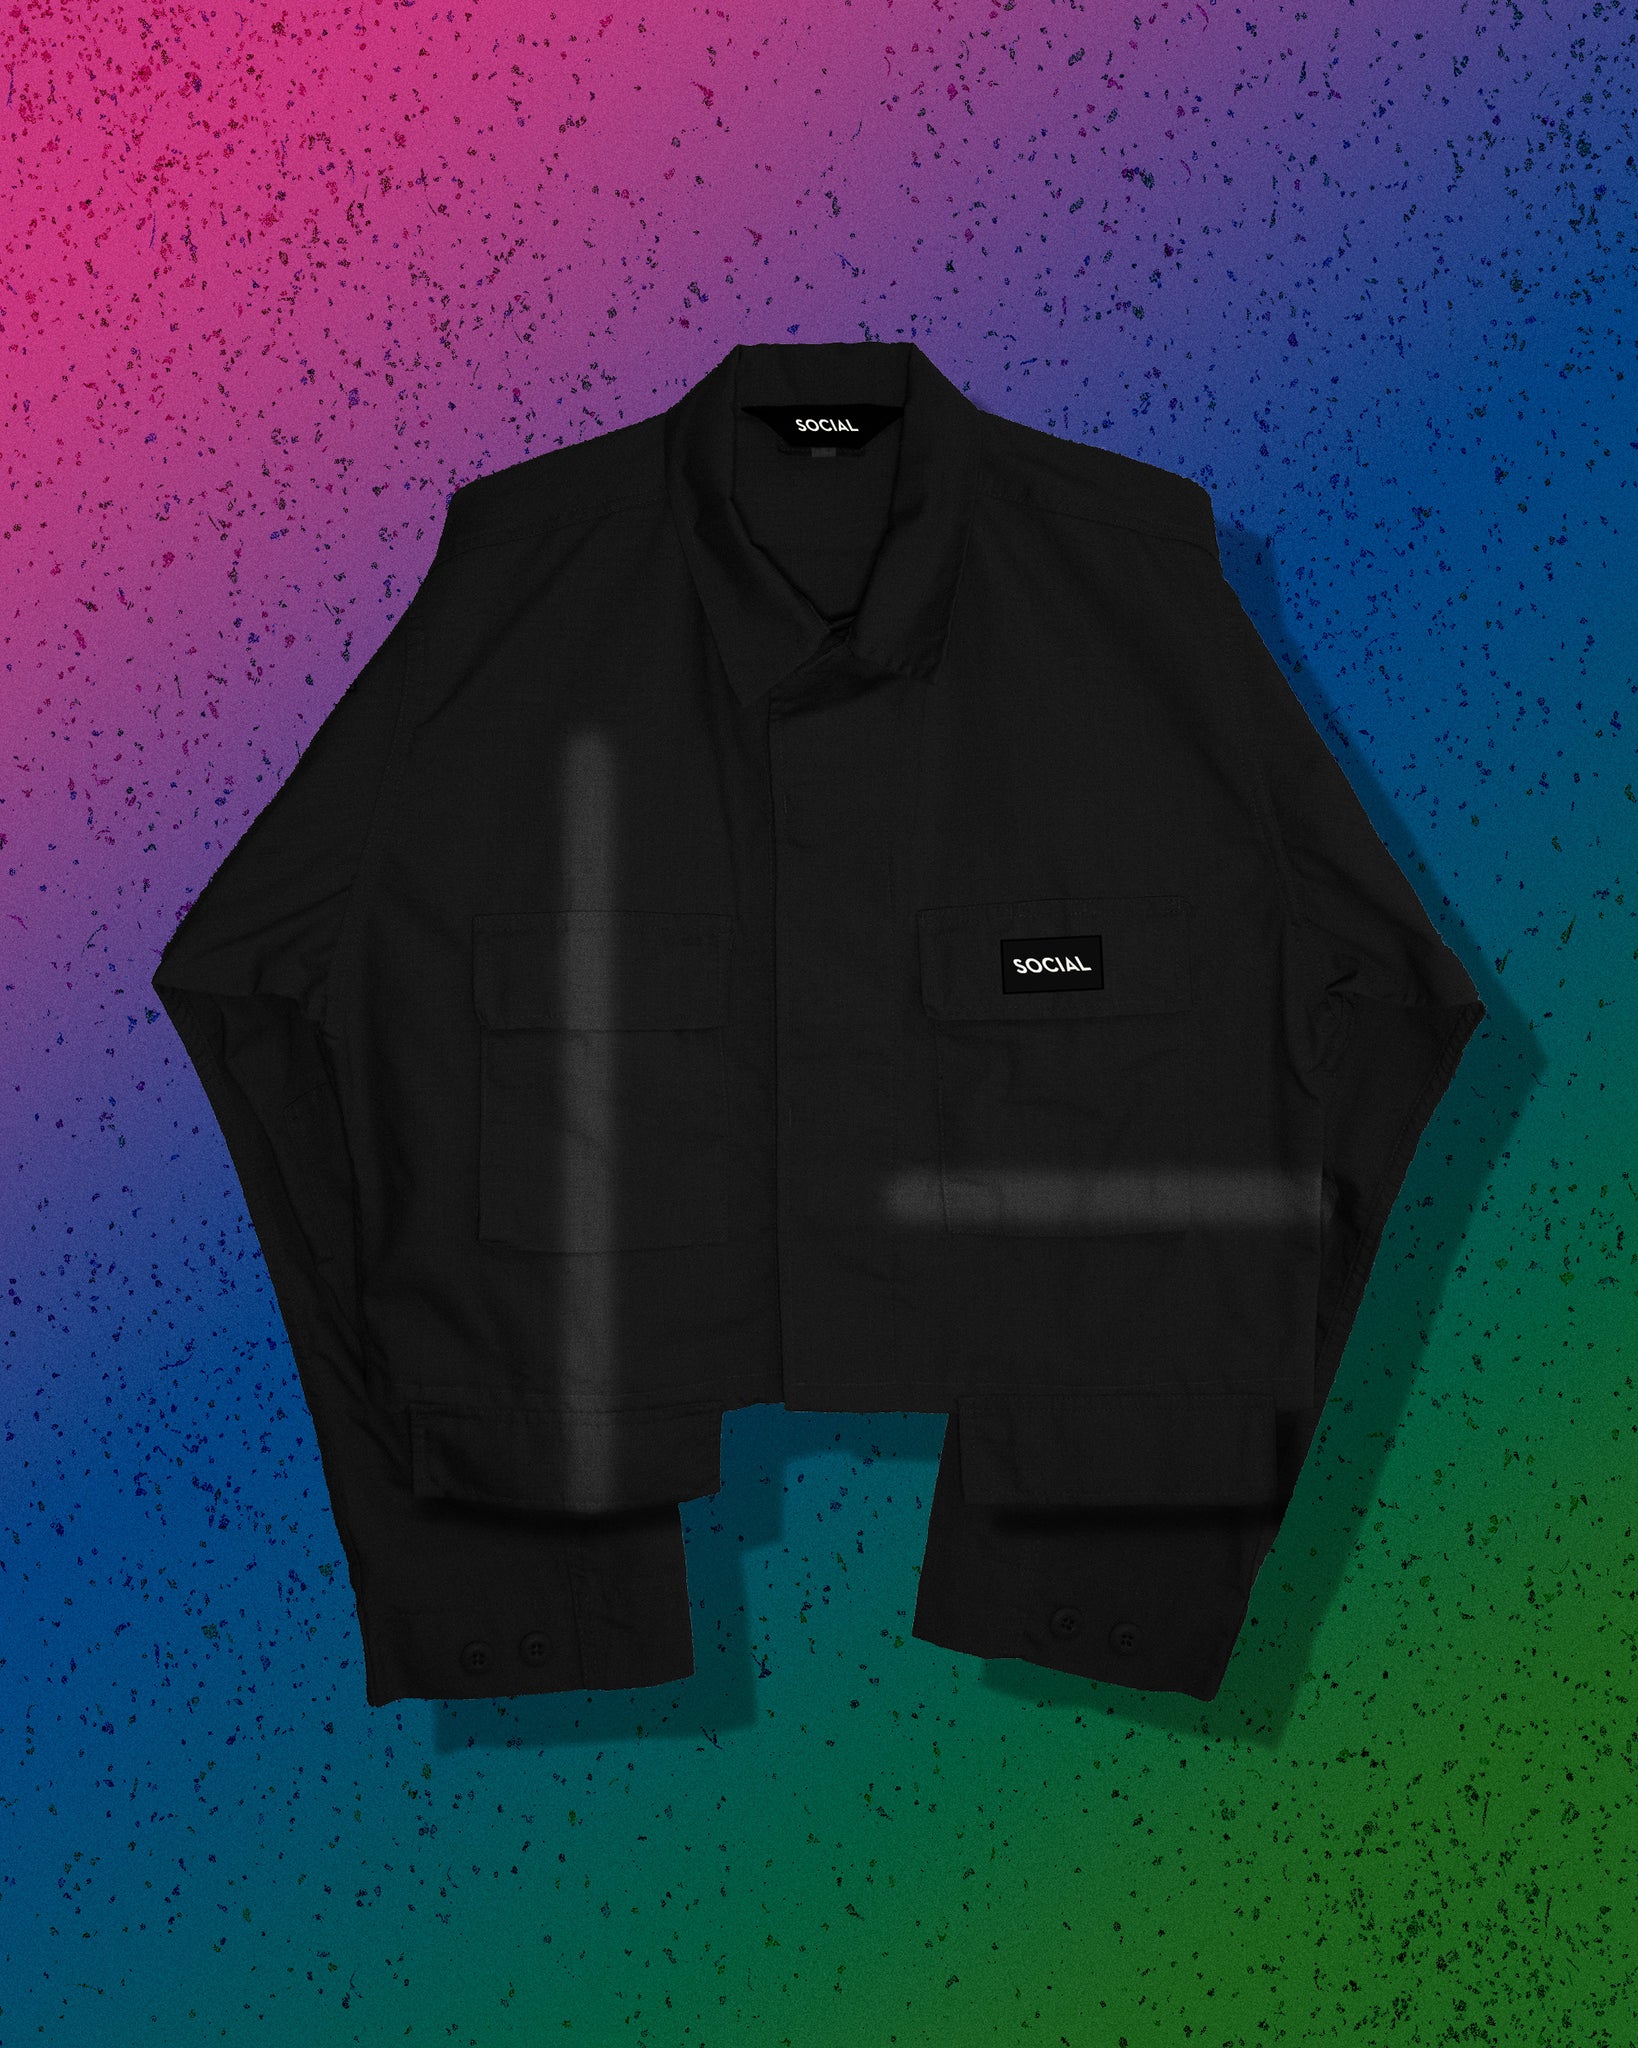 custom black military jacket 